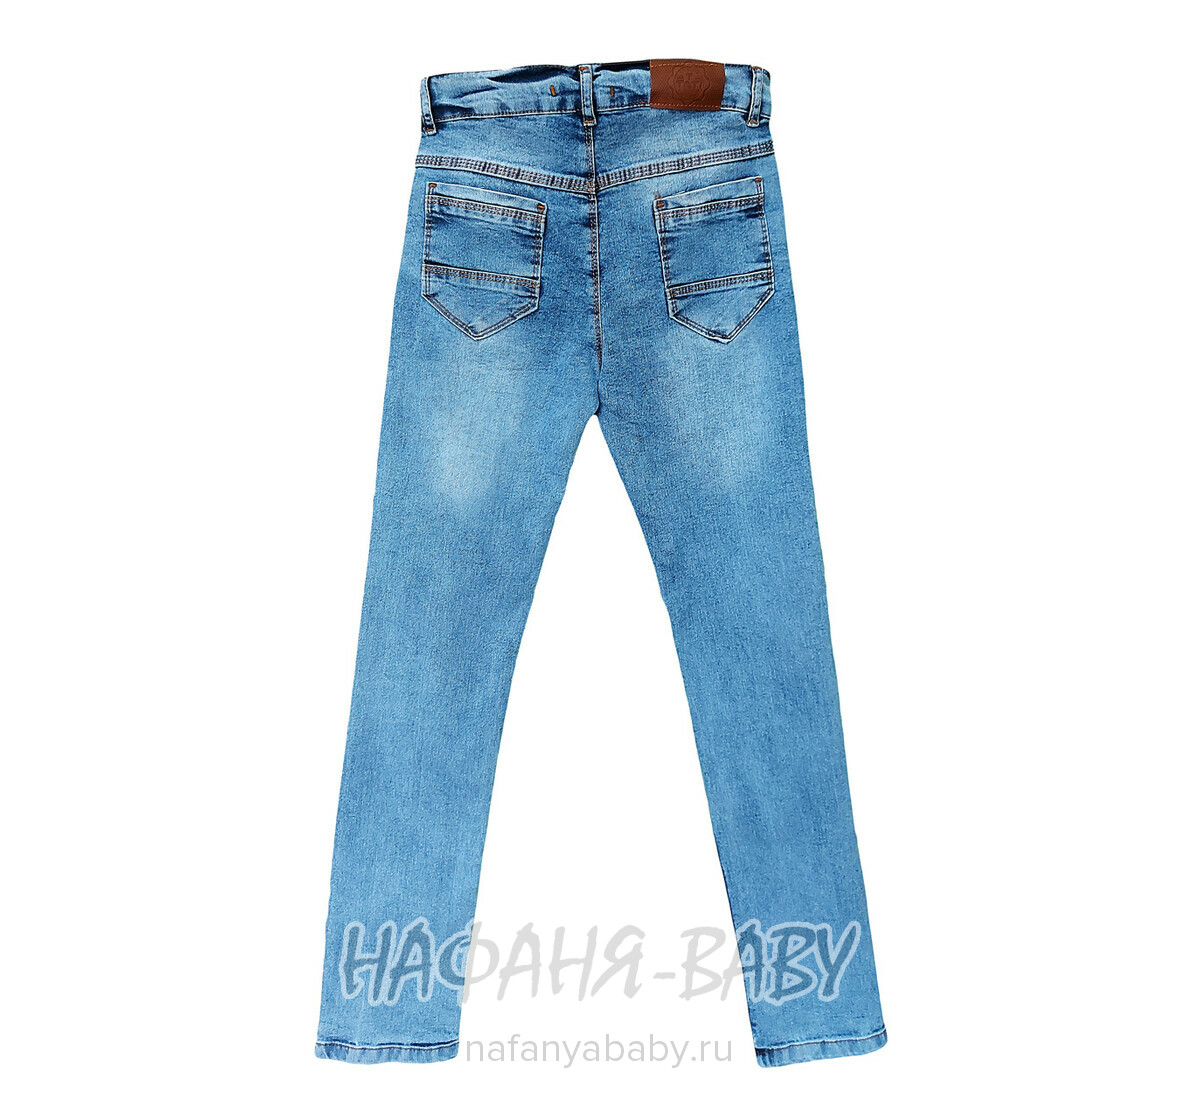 Подростковые джинсы TATI Jeans арт: 2627, 13-17 лет, цвет синий, оптом Турция